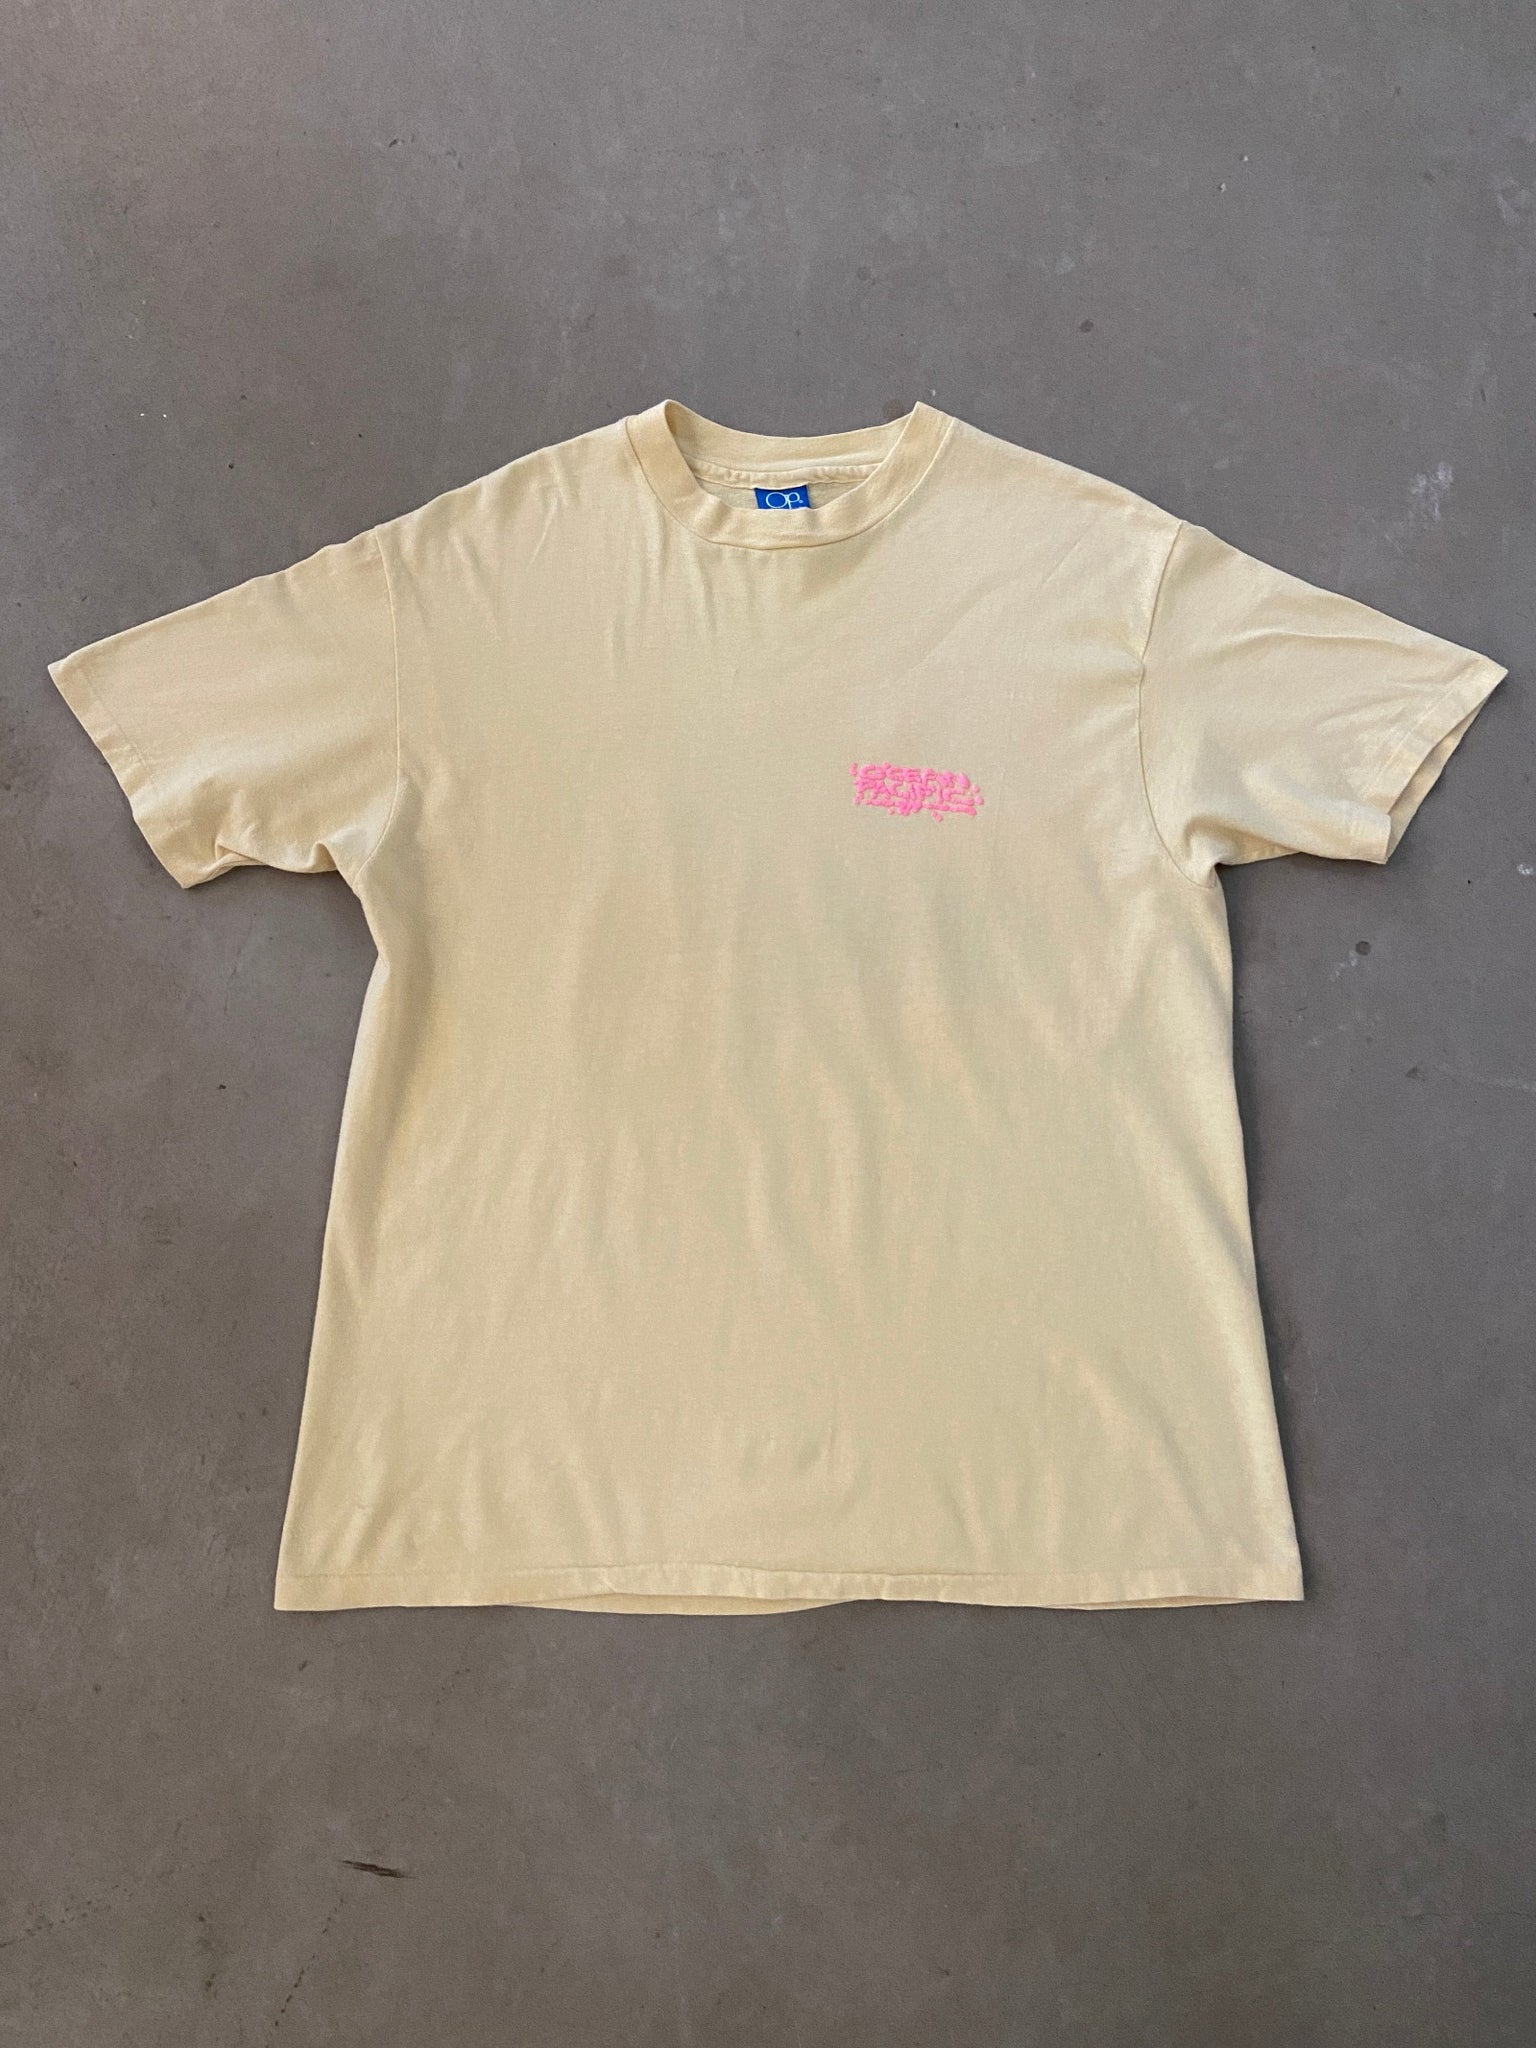 1988 Ocean Pacific Surf T-shirt - XL